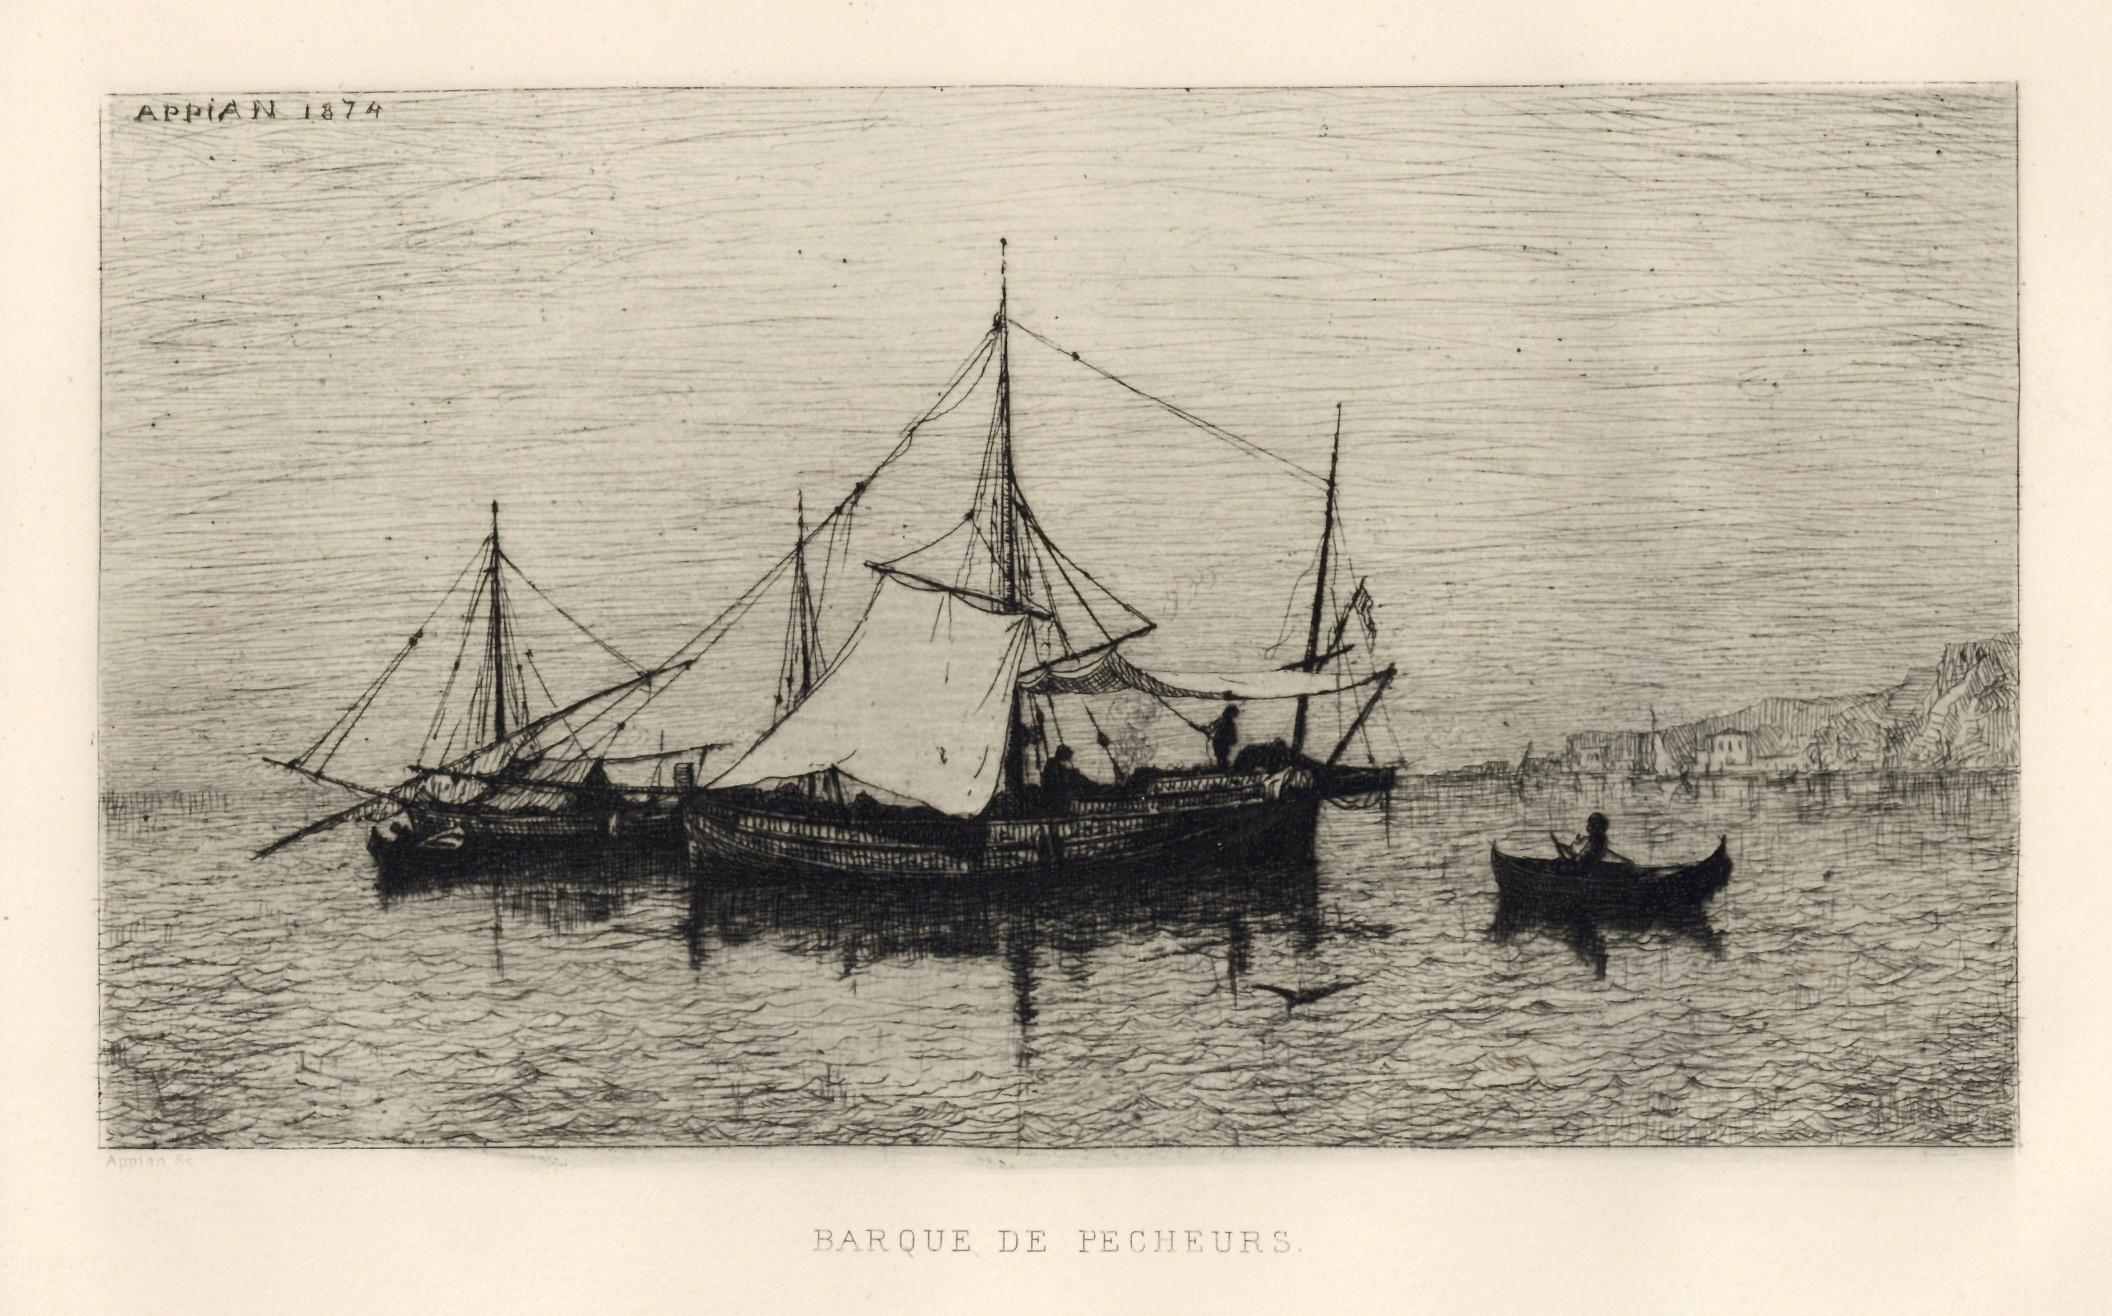 ""Barque de pecheurs"" gravure originale - Print de Adolphe APPIAN